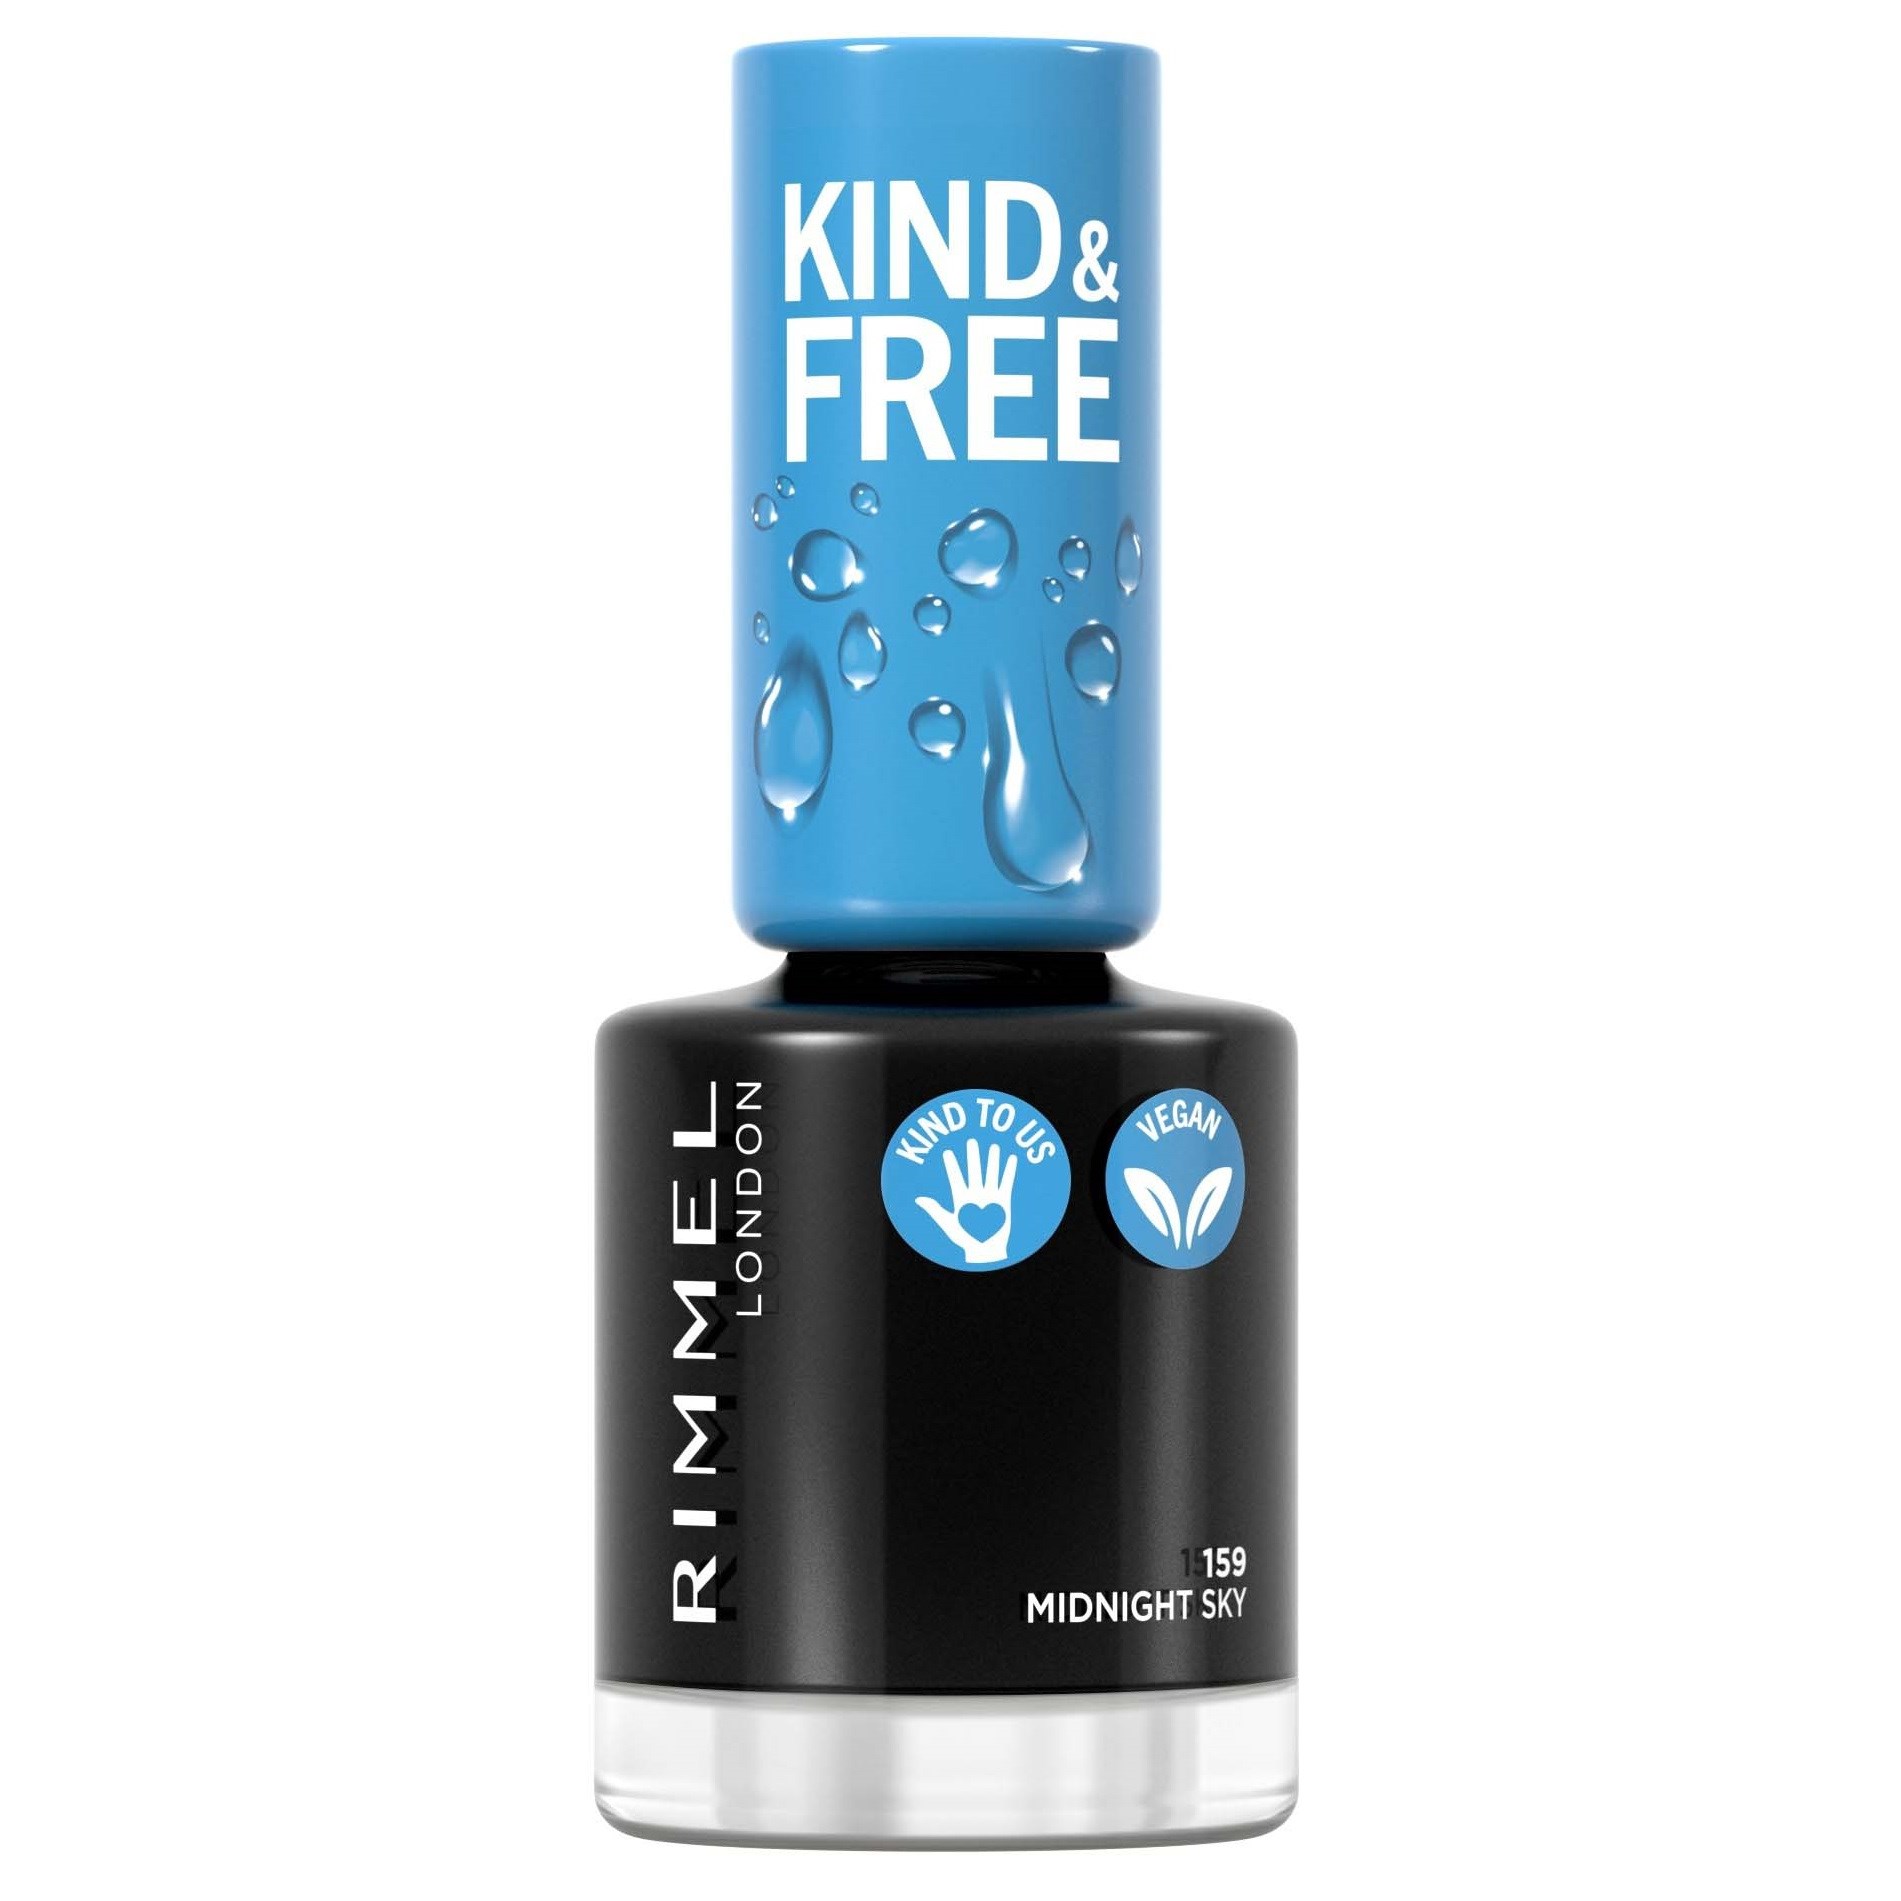 Läs mer om Rimmel Kind & Free clean nail 159 Black